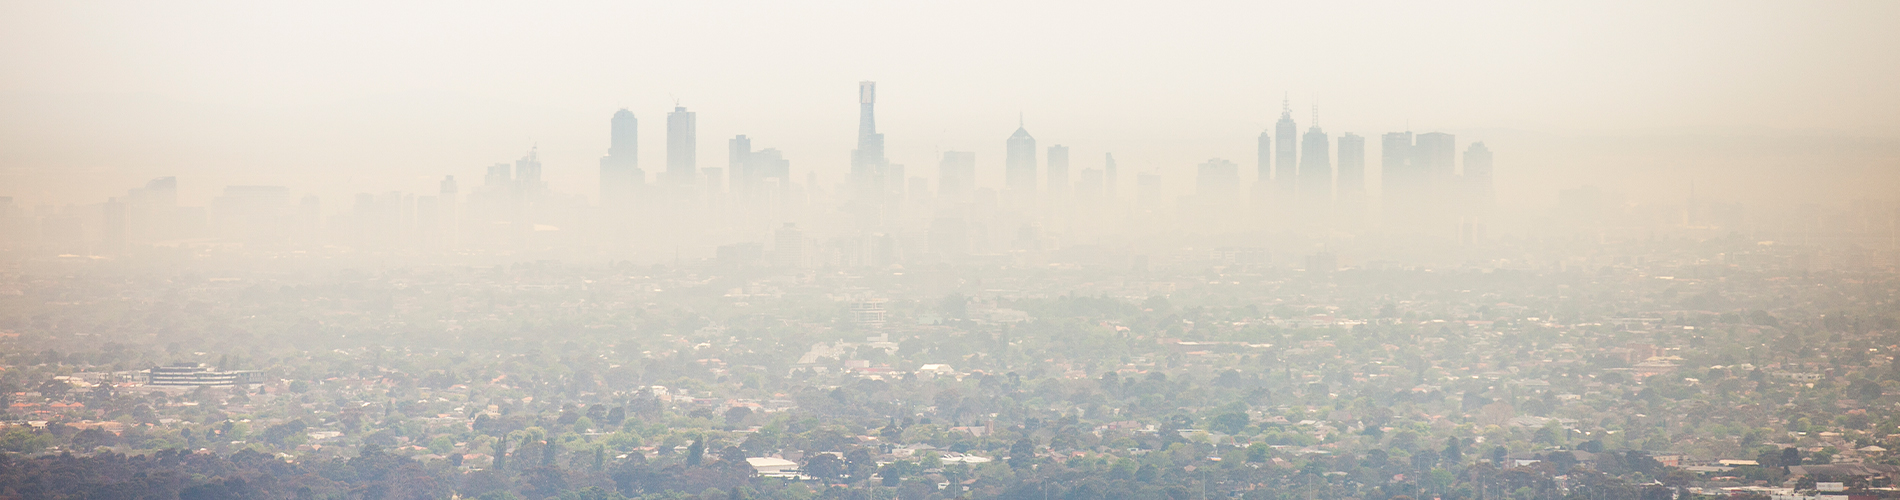 Melbourne Air Pollution 1900x500